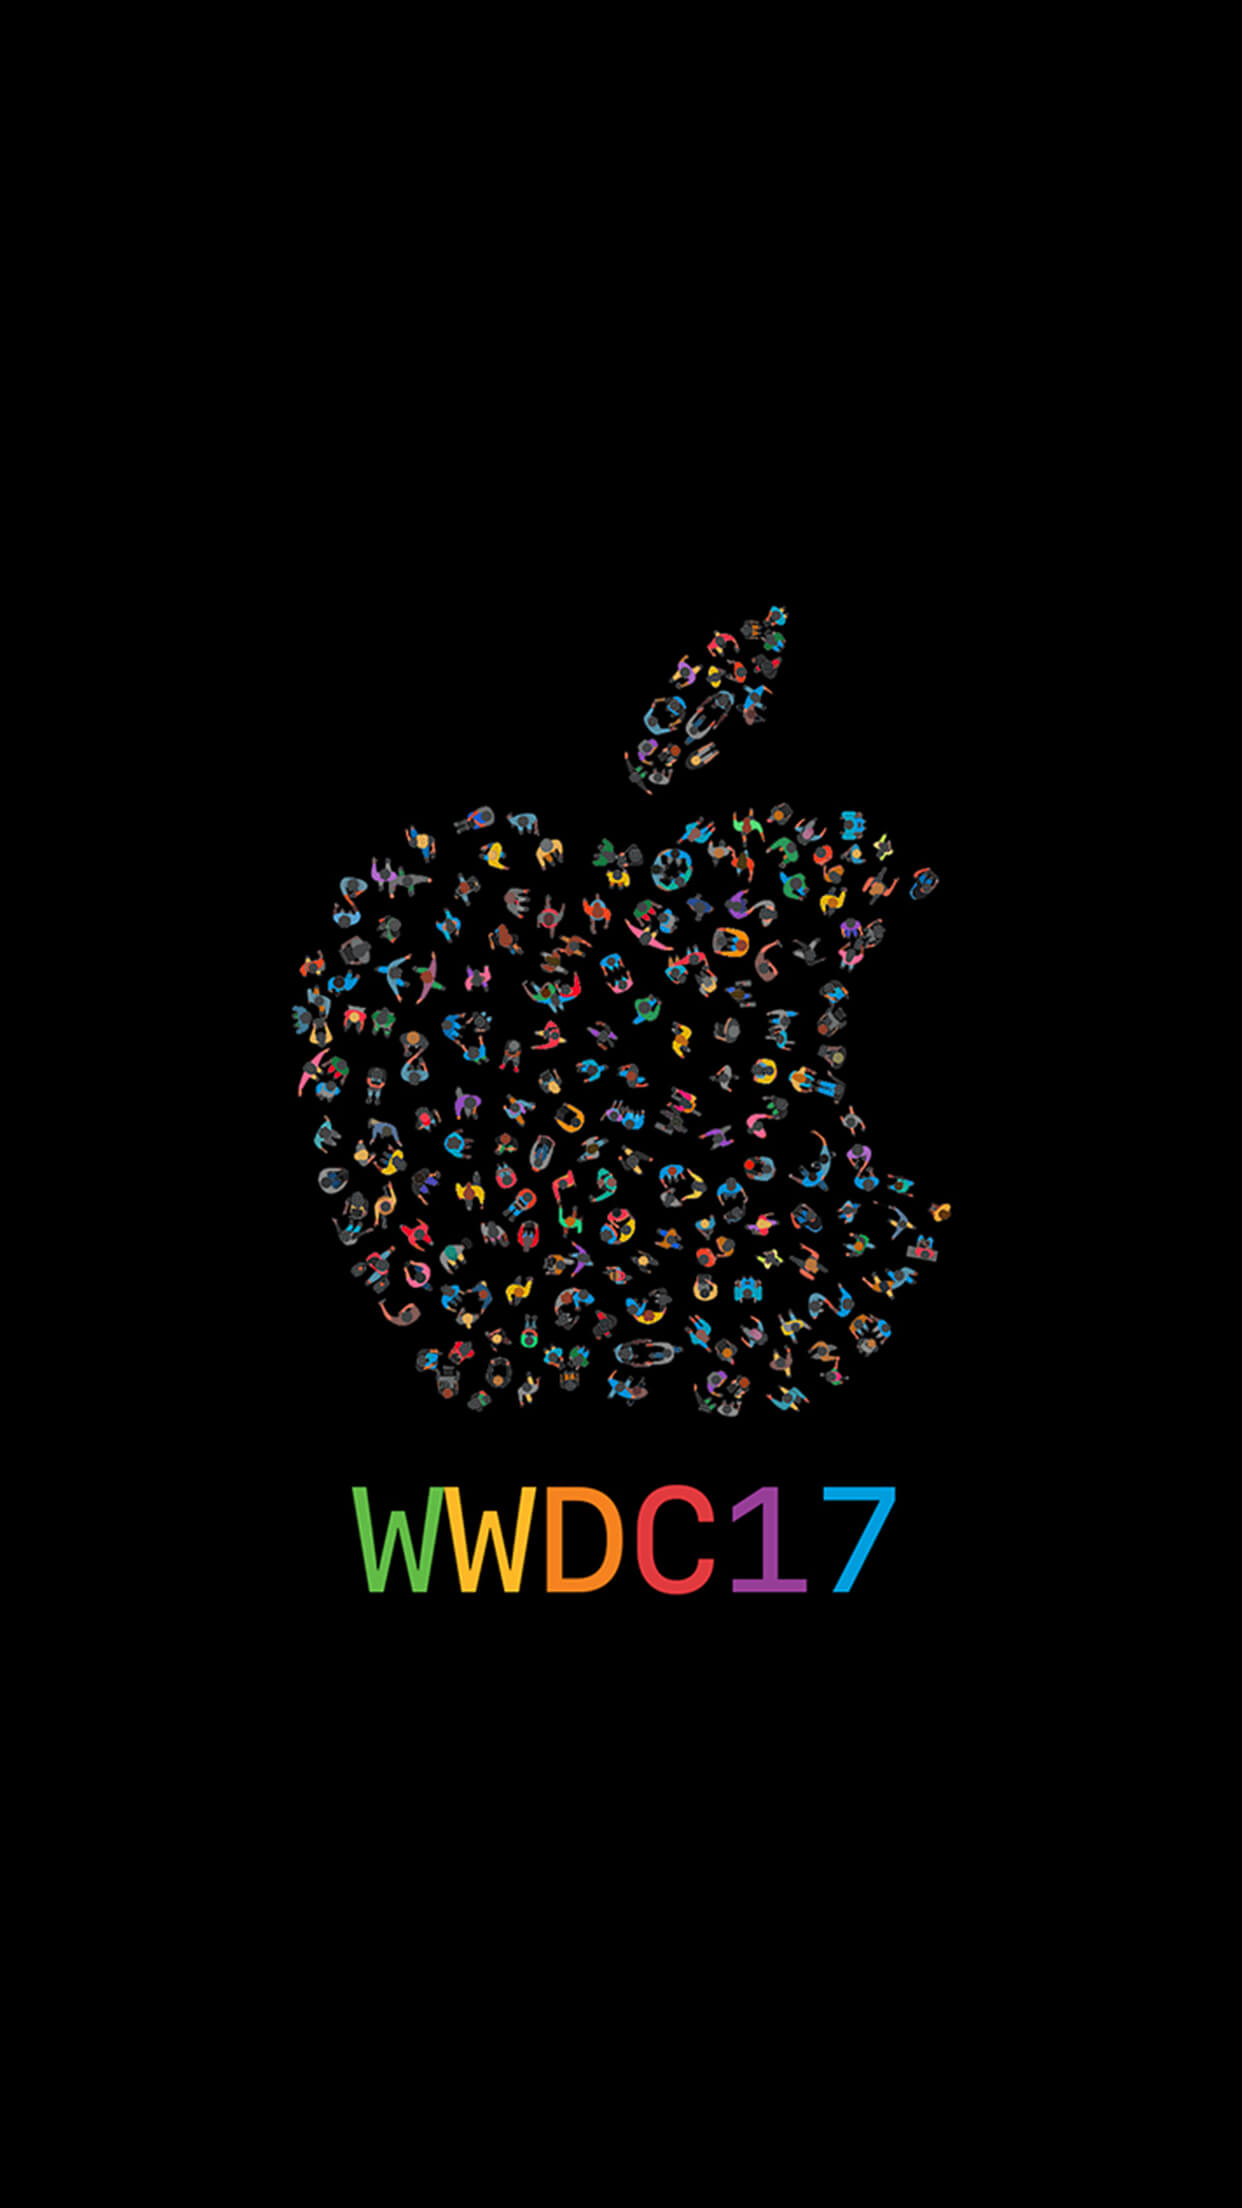 Специальная подборка обоев к WWDC 2017. Фото.